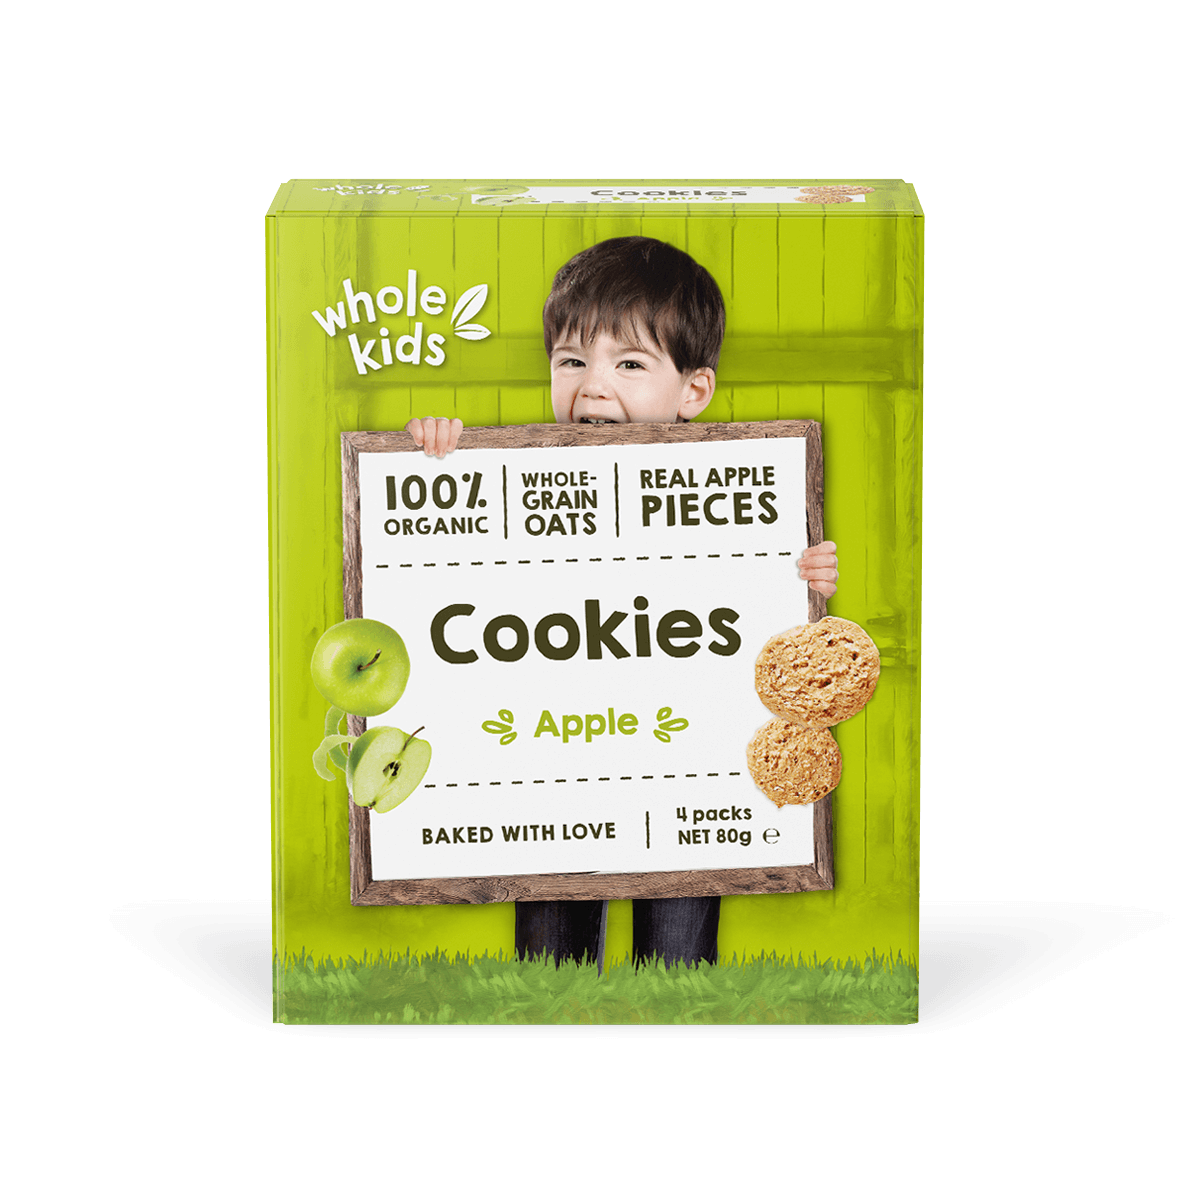 Wk Cookies Apple Box Backshadow